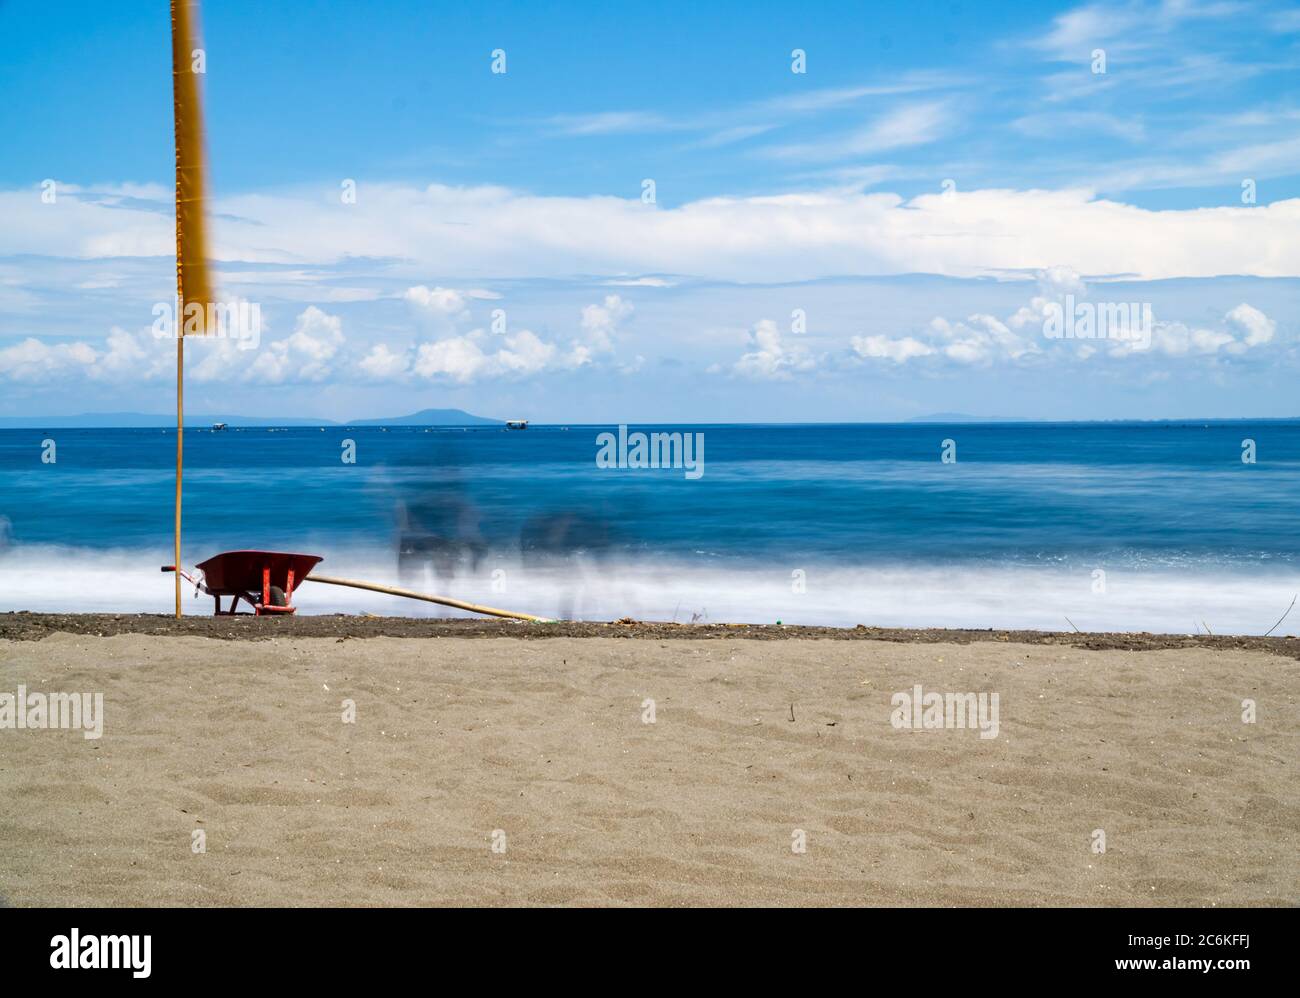 brouette rouge sur la plage. paysage marin en longue exposition Banque D'Images